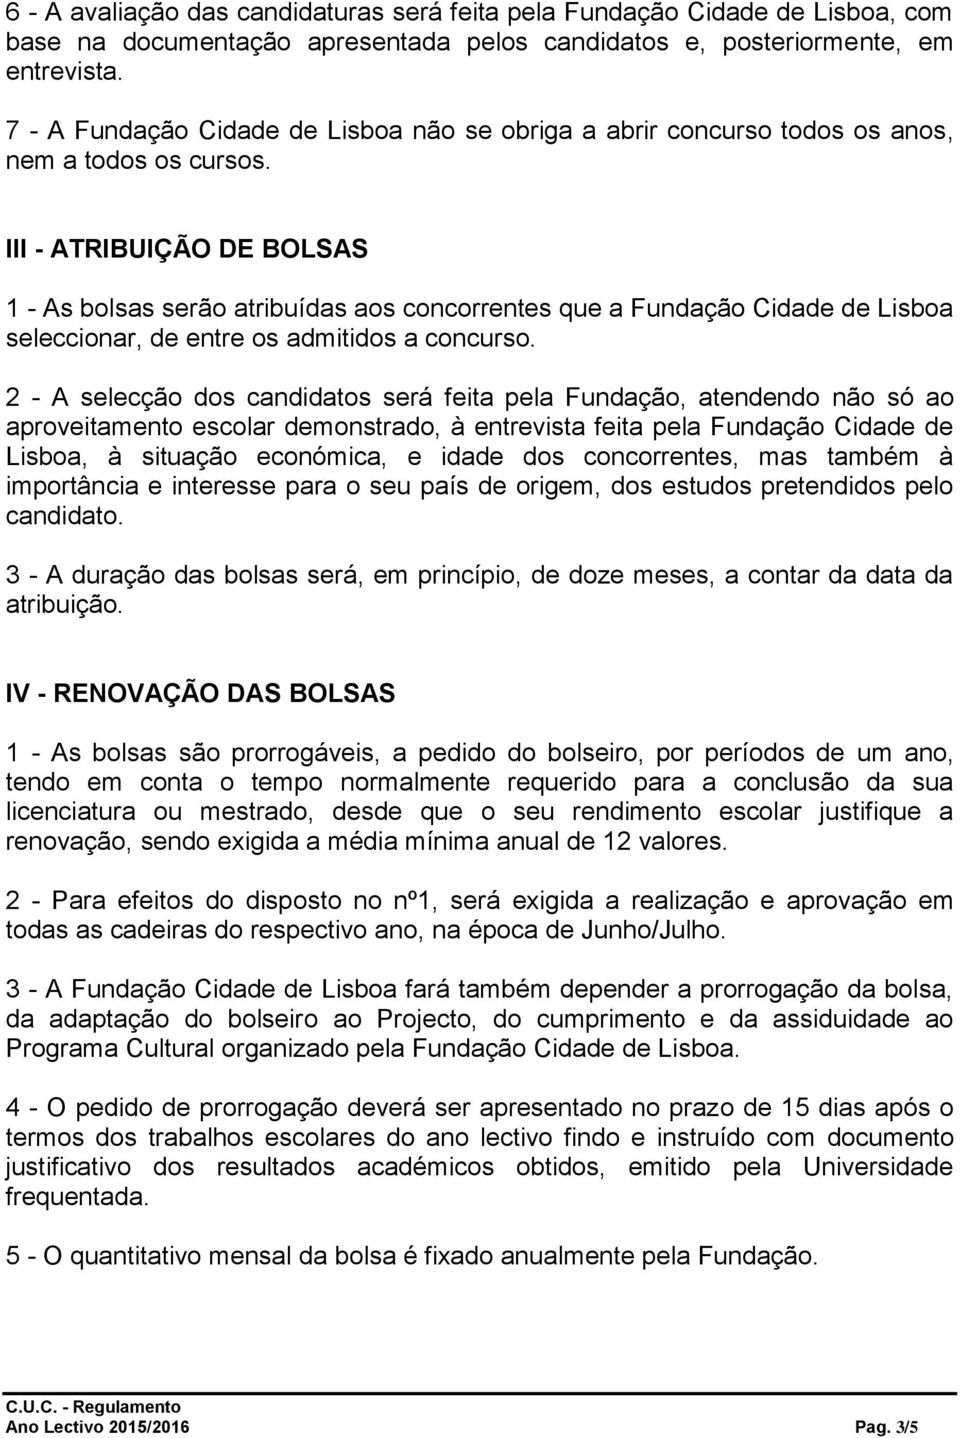 III - ATRIBUIÇÃO DE BOLSAS 1 - As bolsas serão atribuídas aos concorrentes que a Fundação Cidade de Lisboa seleccionar, de entre os admitidos a concurso.